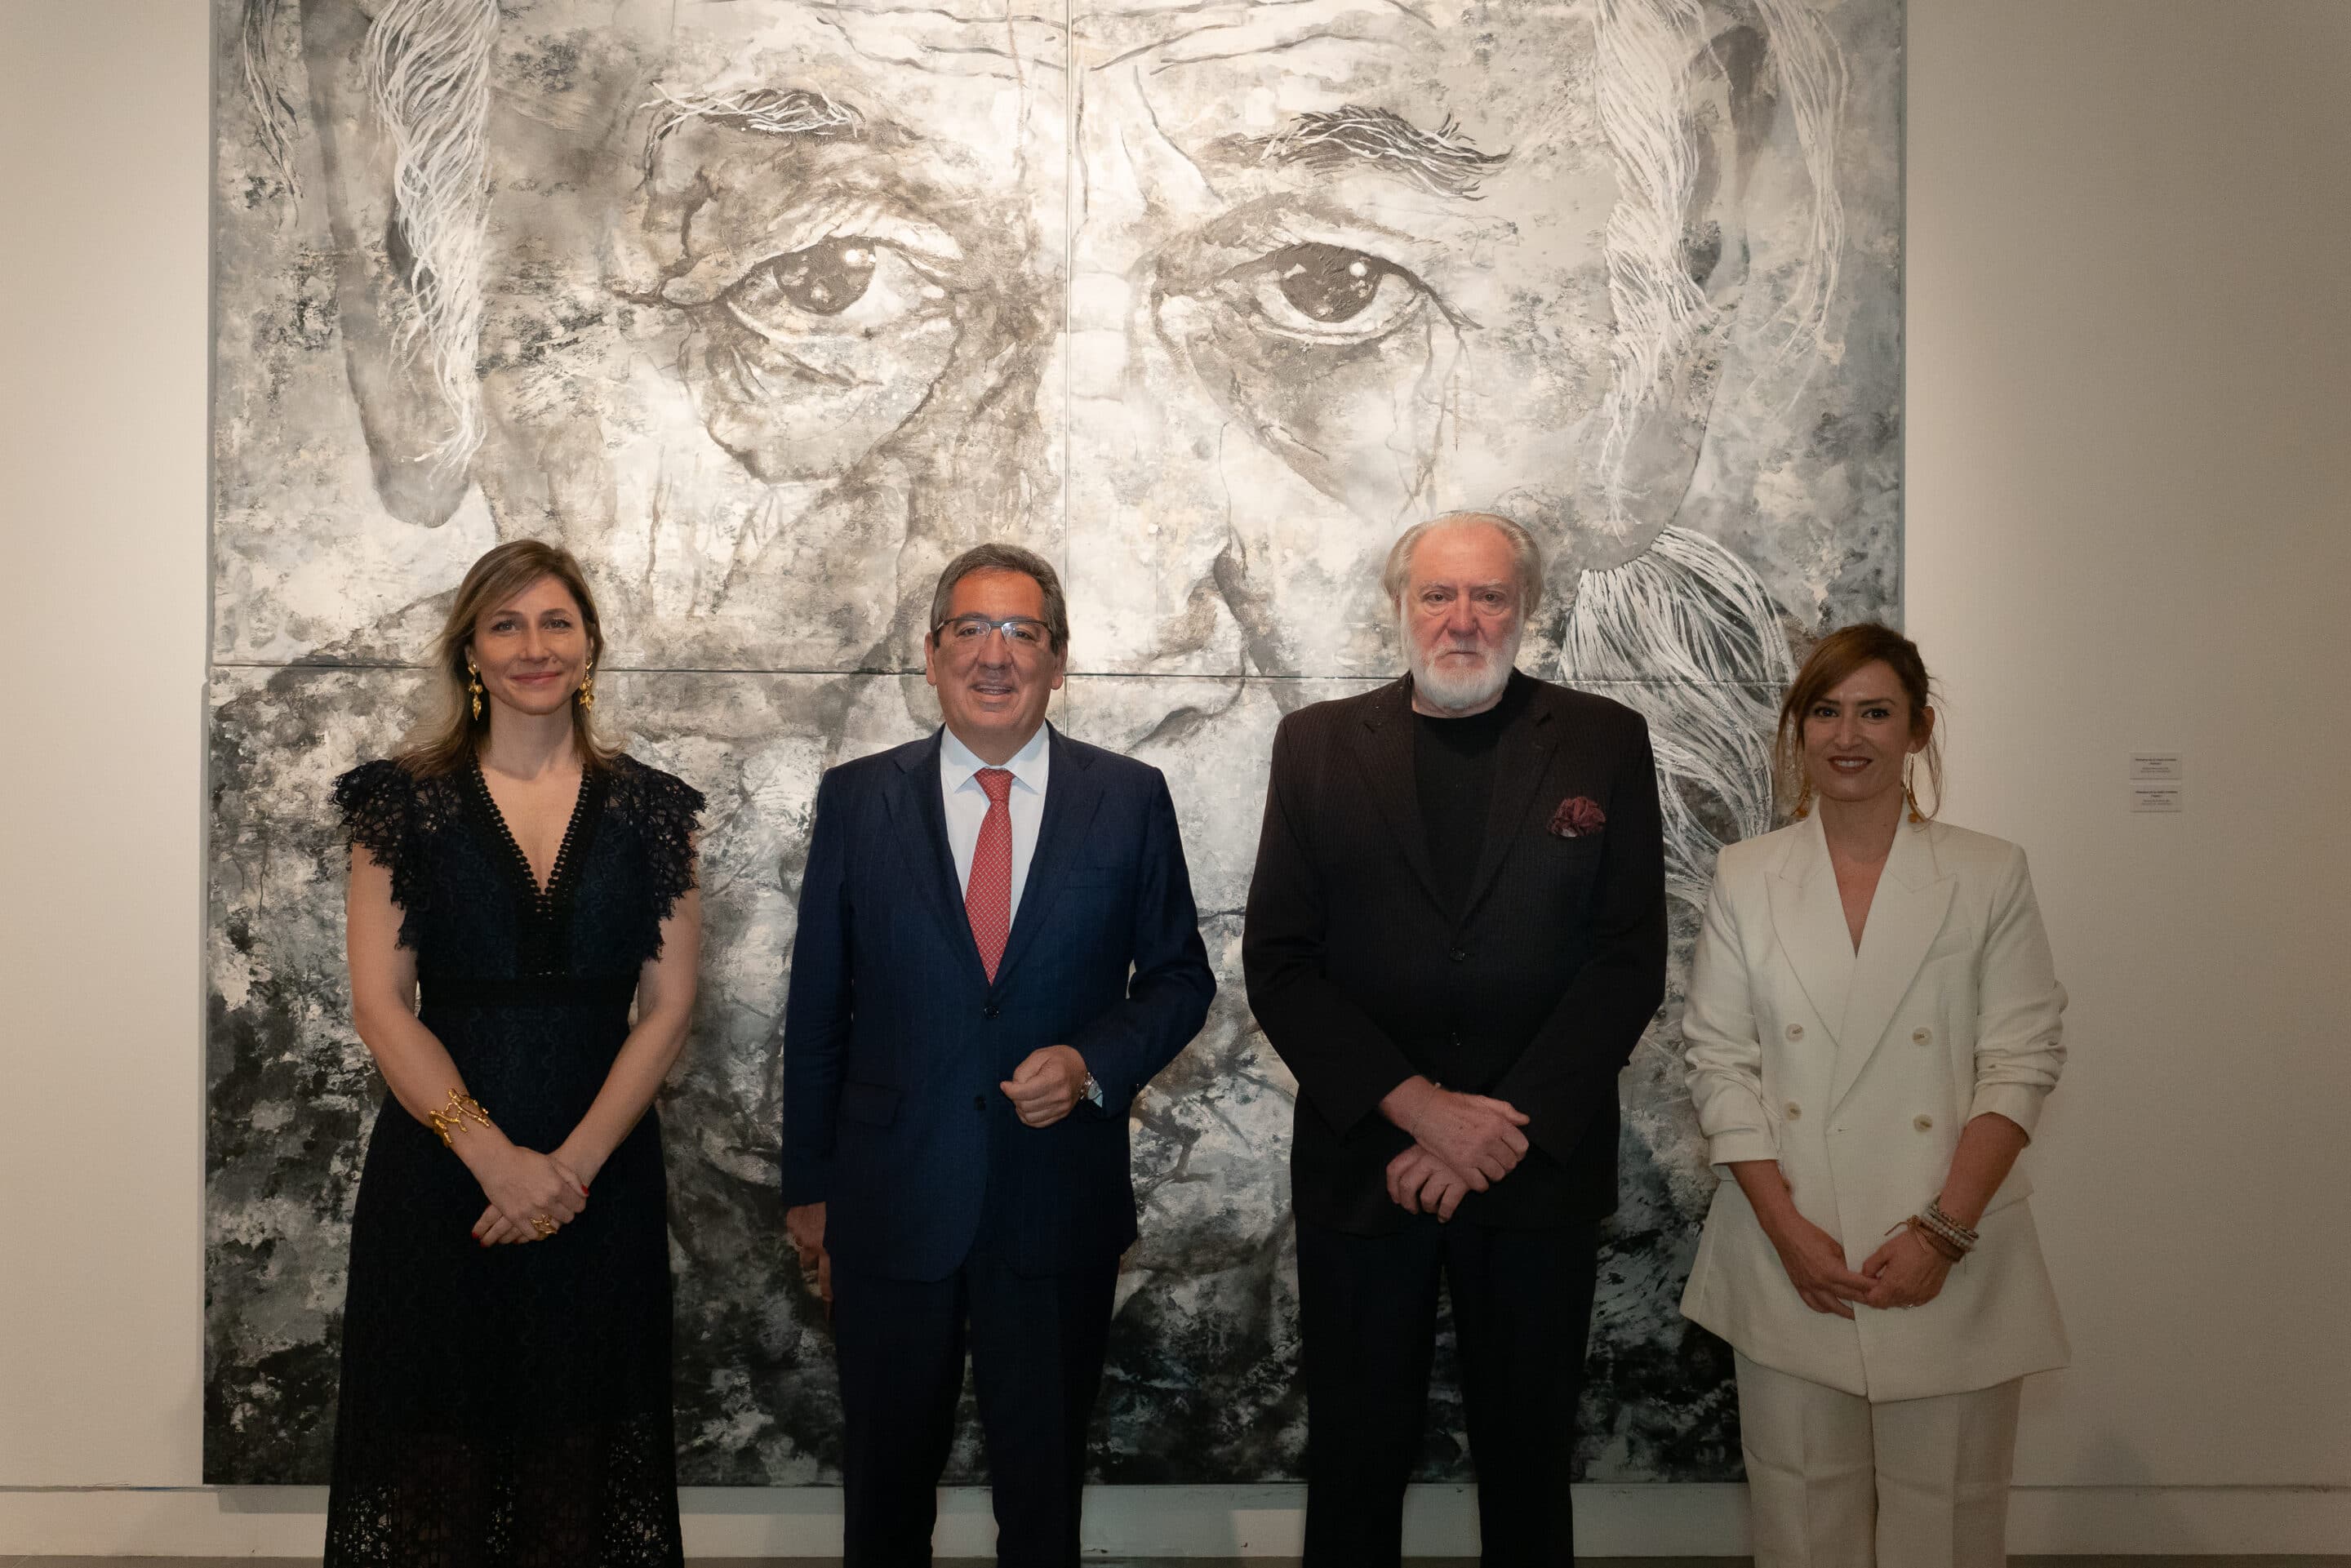 La Fundación Cajasol inaugura la exposición 'Epifanías', del artista argentino Eugenio Cuttica, en un acto con Antonio Pulido, Violeta Frank, Reyes Abad y el propio autor.